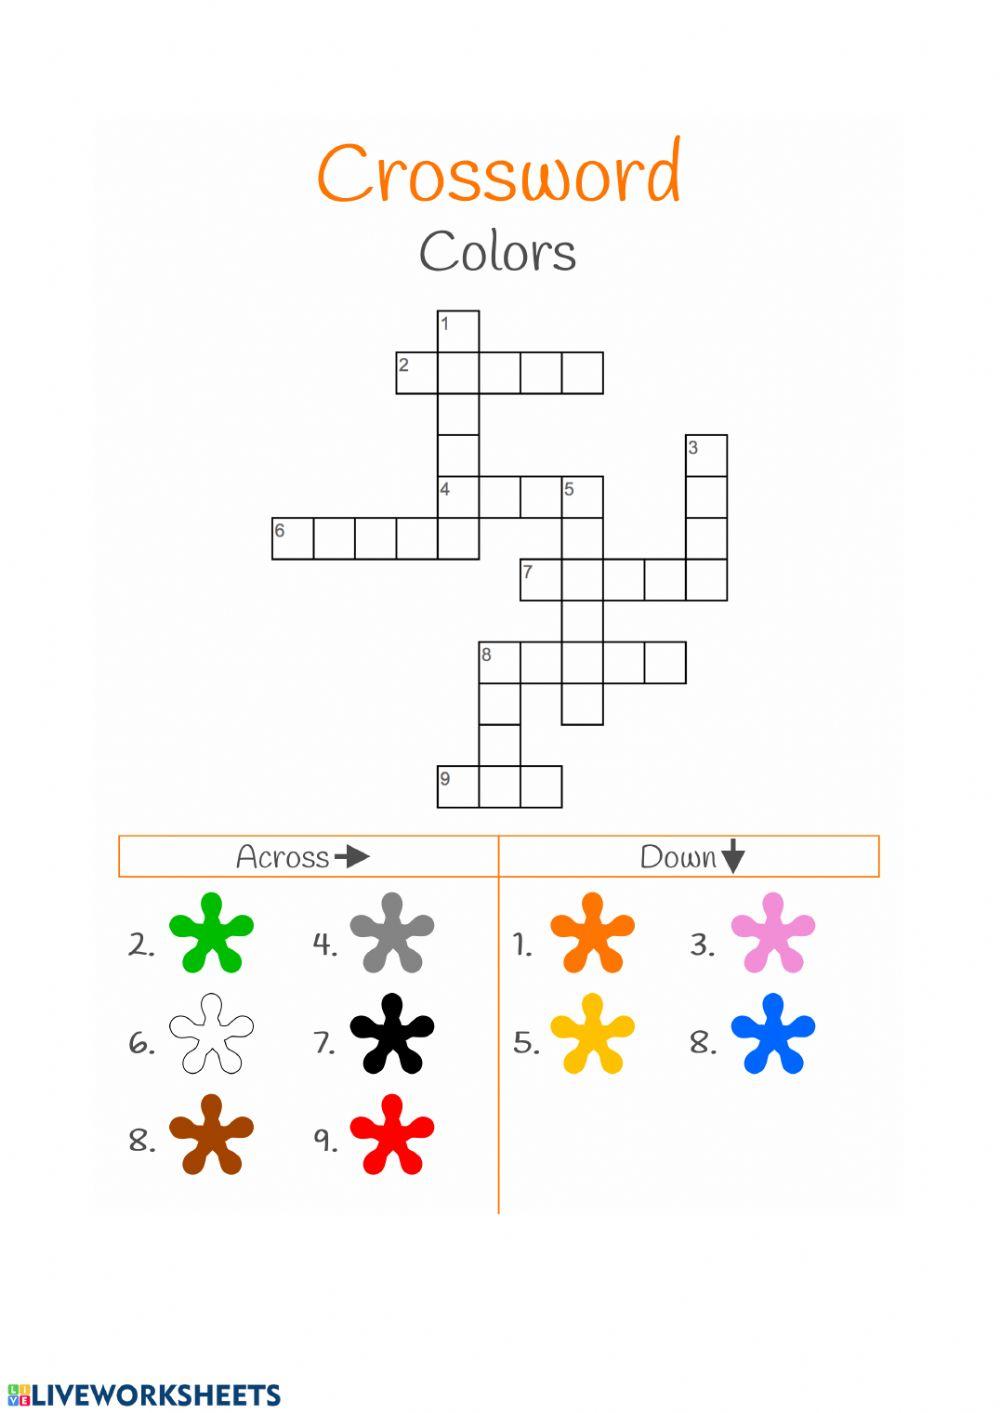 Crossword colours